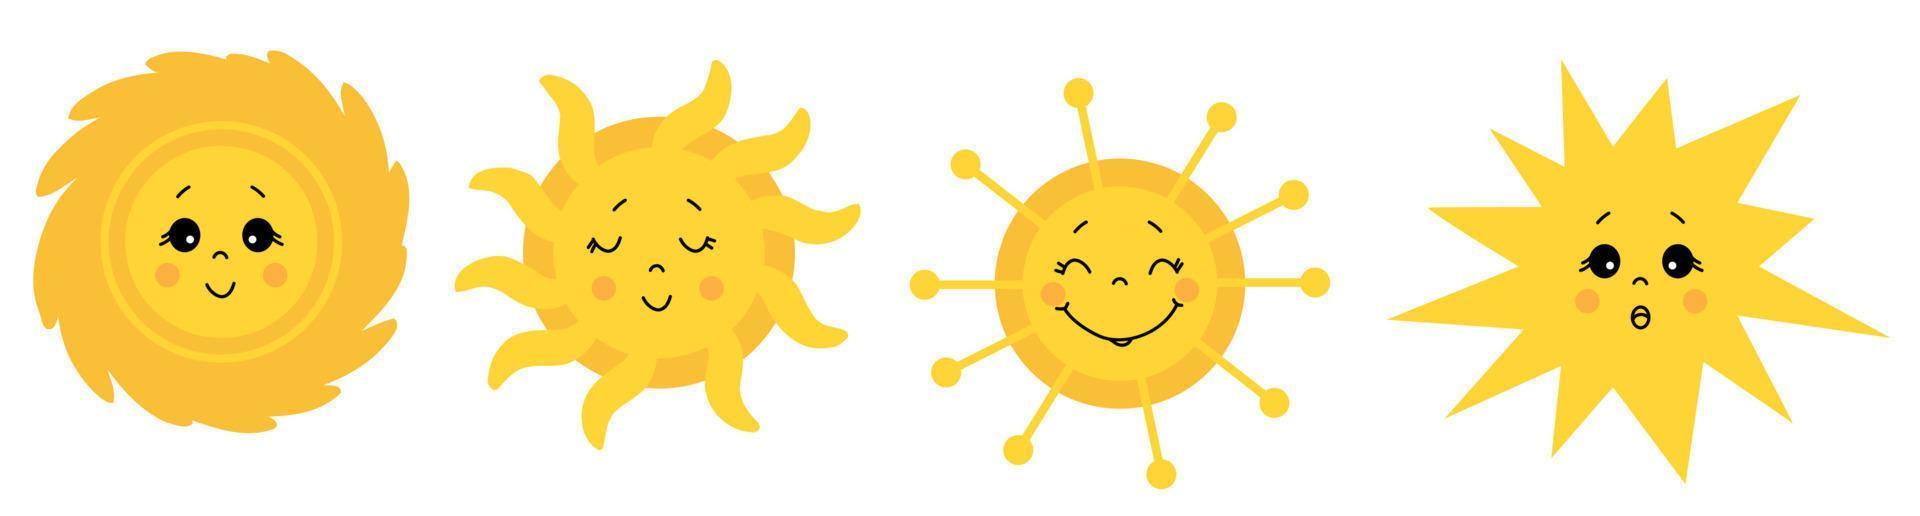 joli soleil. jeu d'icônes vectorielles. dessins dessinés du soleil avec différents visages et émotions. yeux fermés et ouverts. illustration vectorielle. vecteur